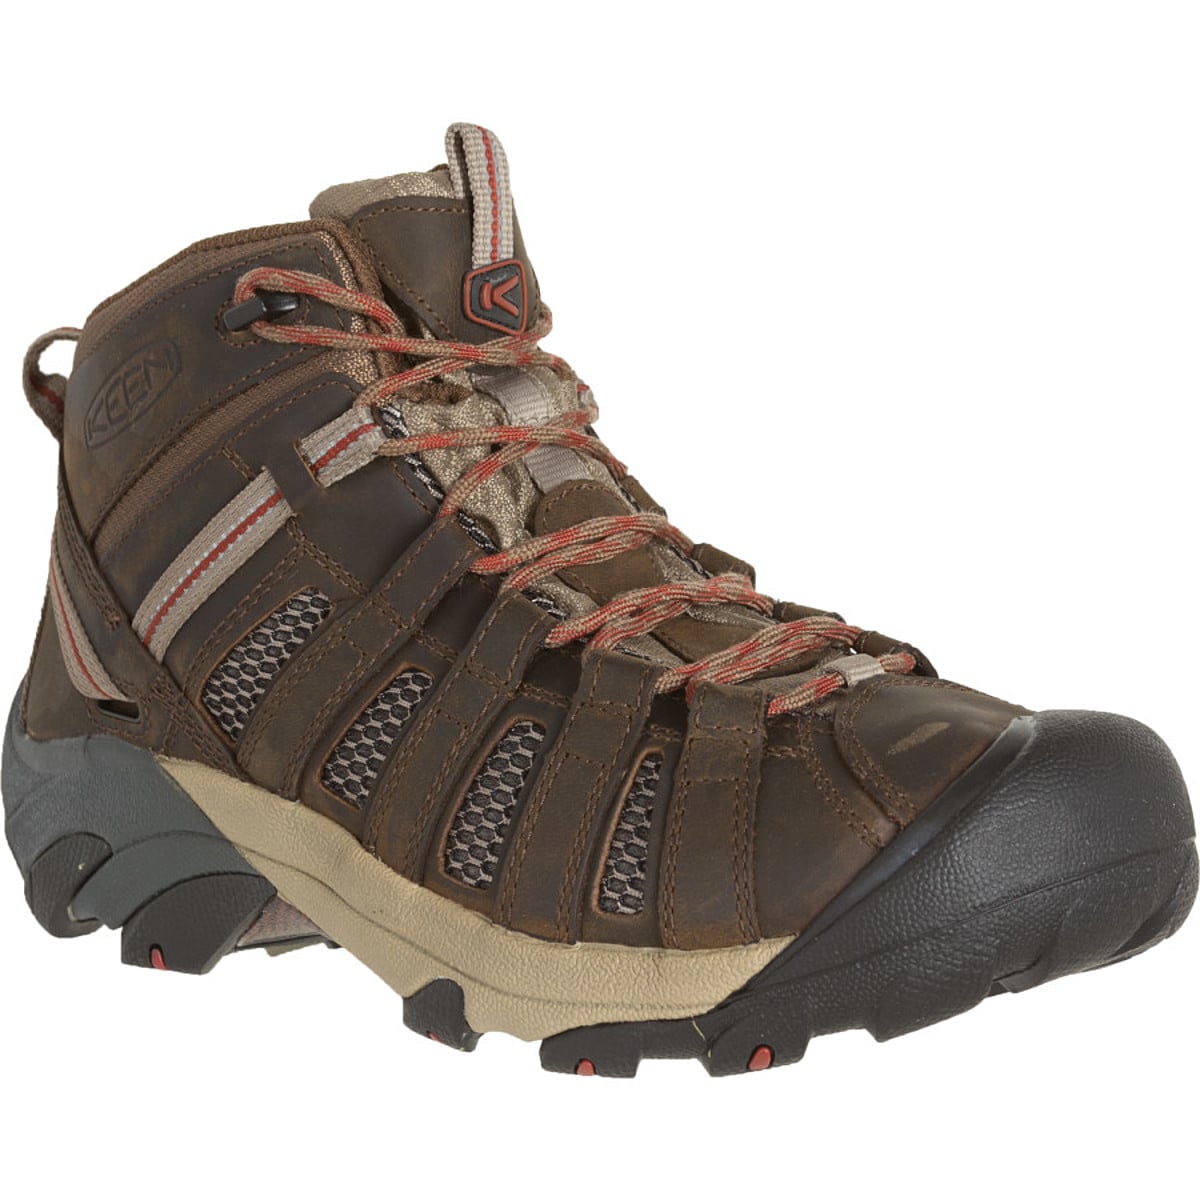 Voyageur Mid Hiking Boot - Men